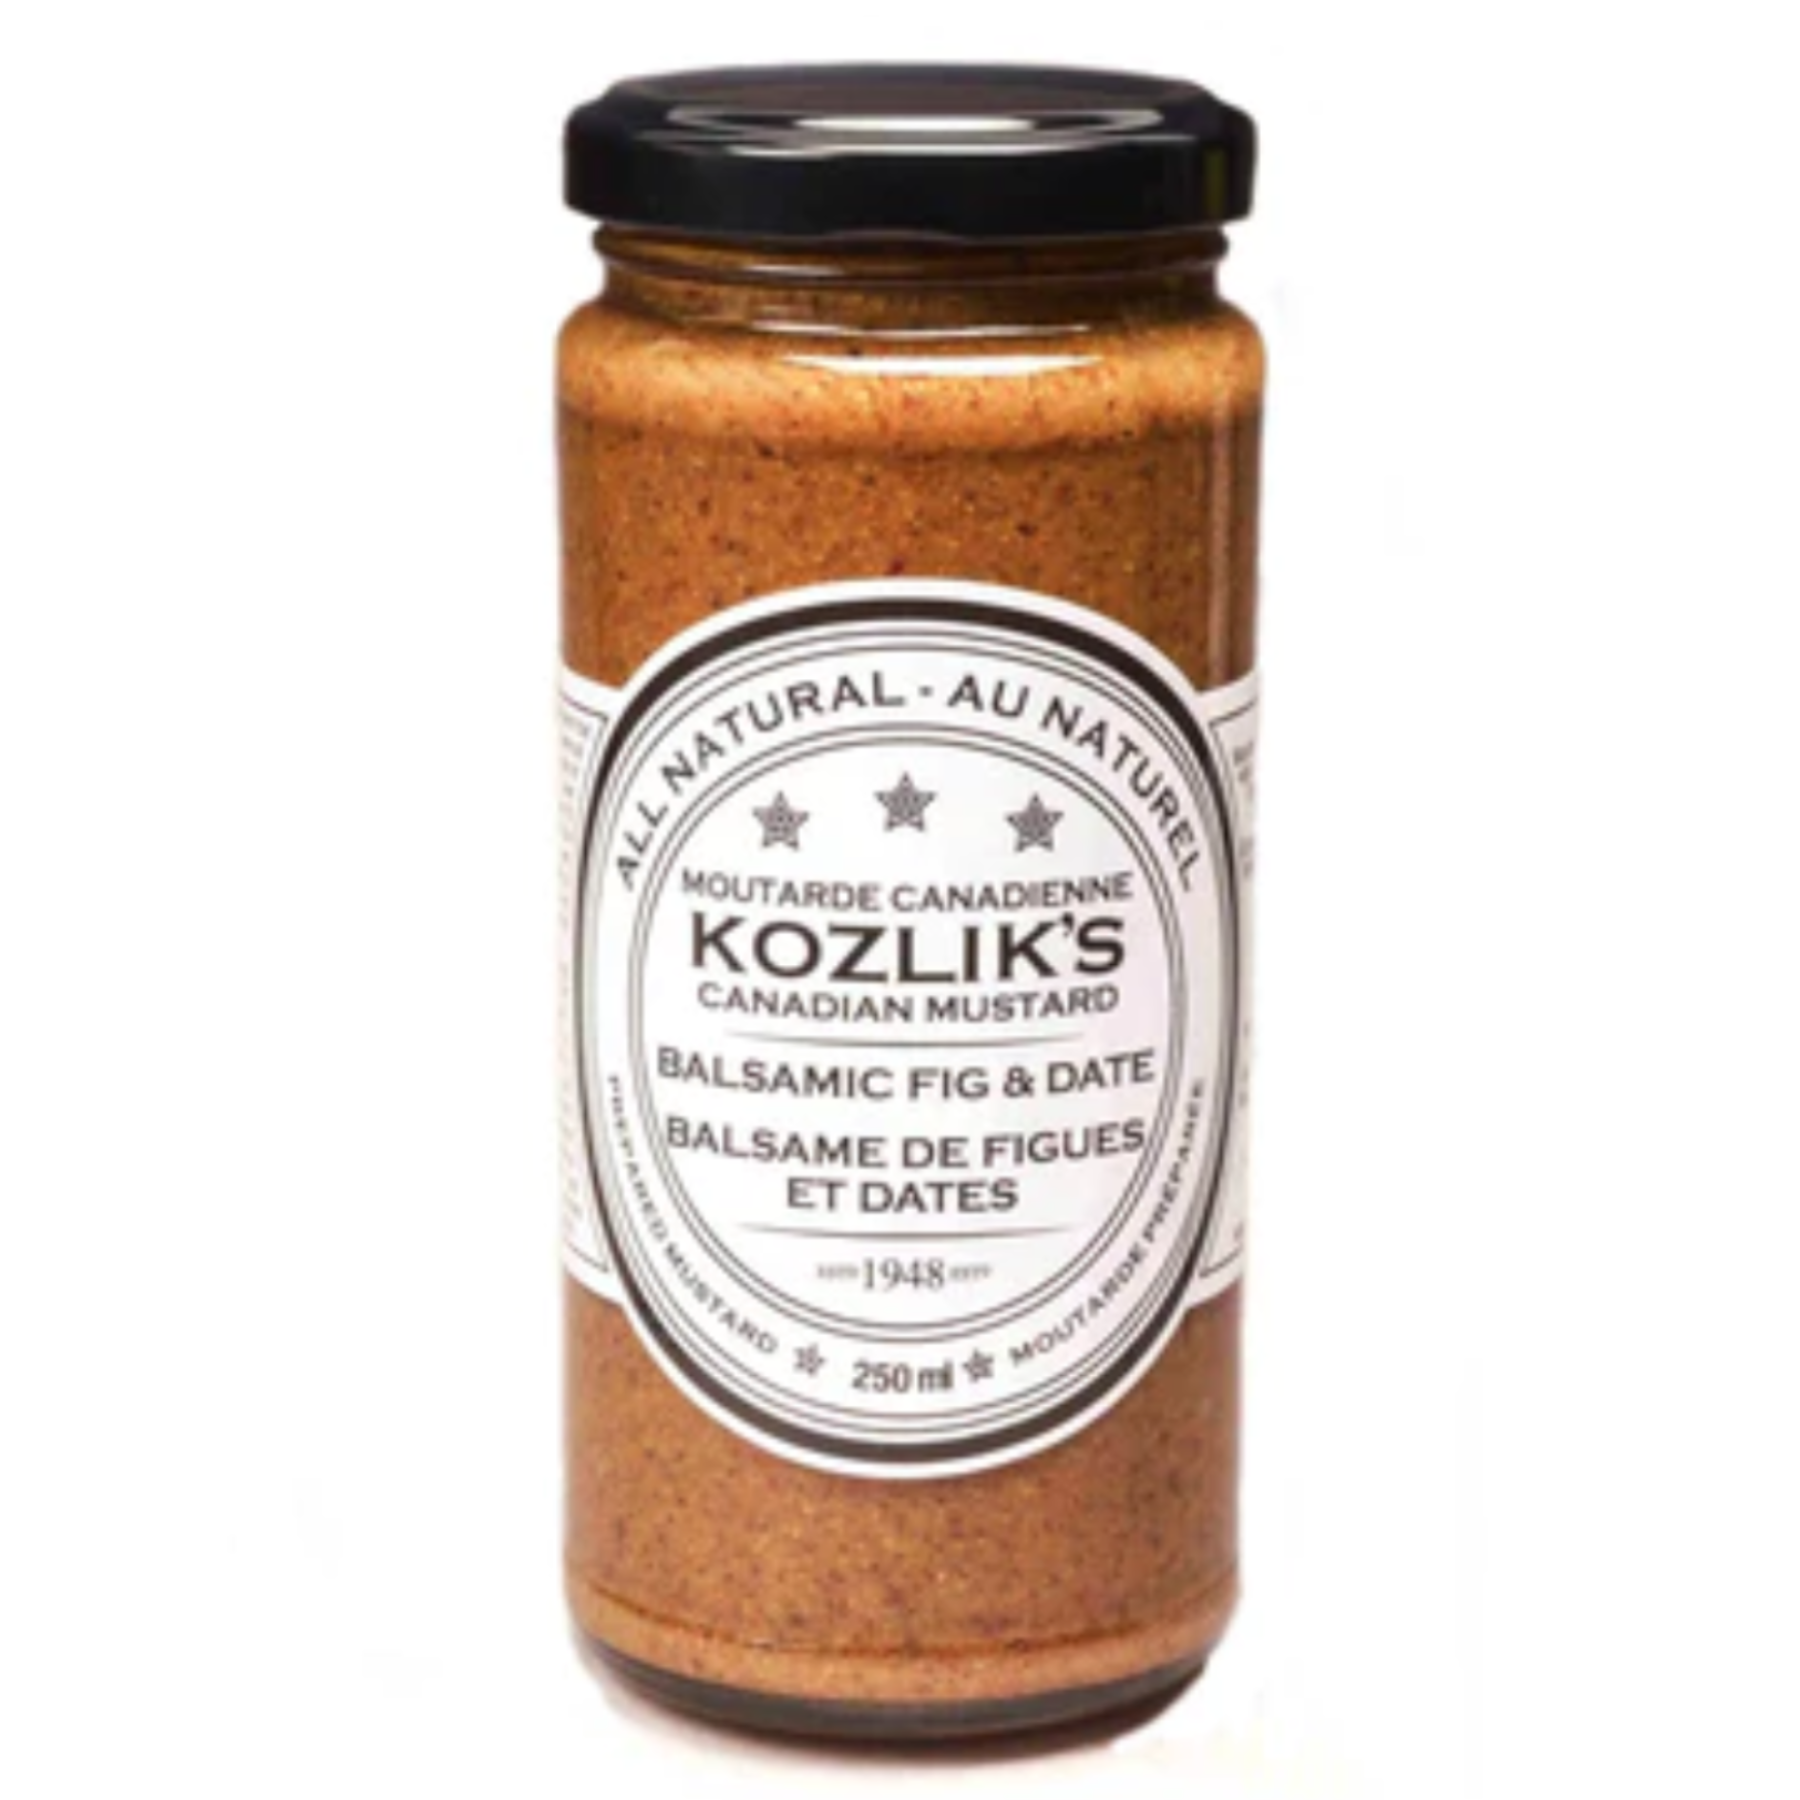 Kozlik's Mustard Balsamic Figs & Date